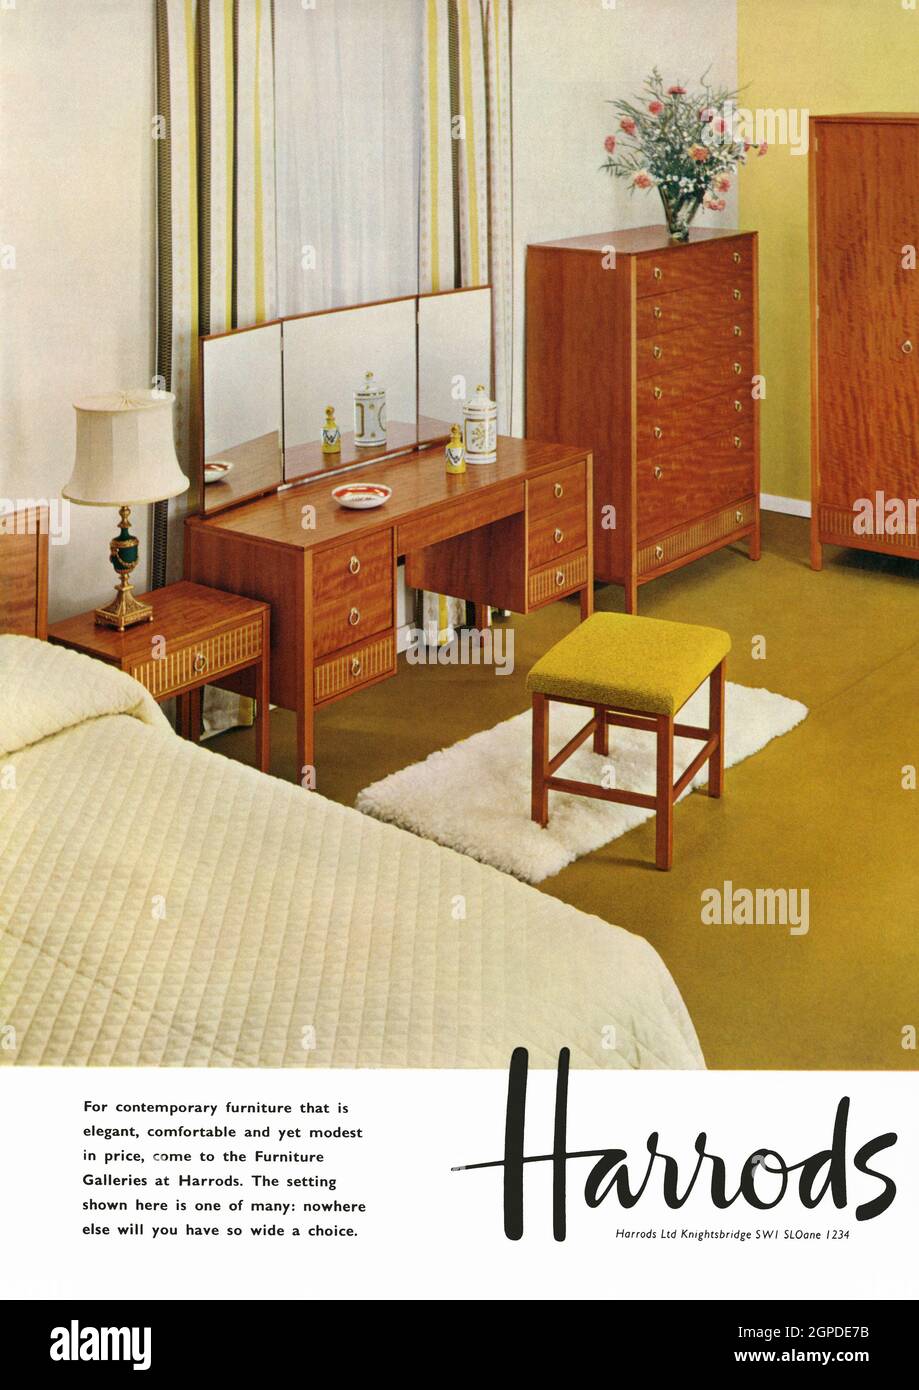 Un anuncio de 1960s para Harrods of Knightsbridge, Londres, Inglaterra, Reino Unido. El anuncio apareció en una revista publicada en el Reino Unido en octubre de 1962. Cuenta con una fotografía de los modernos muebles de la habitación de mediados de siglo de los grandes almacenes de lujo, además del distintivo logotipo de Harrods: Gráficos vintage de 1960s. Foto de stock